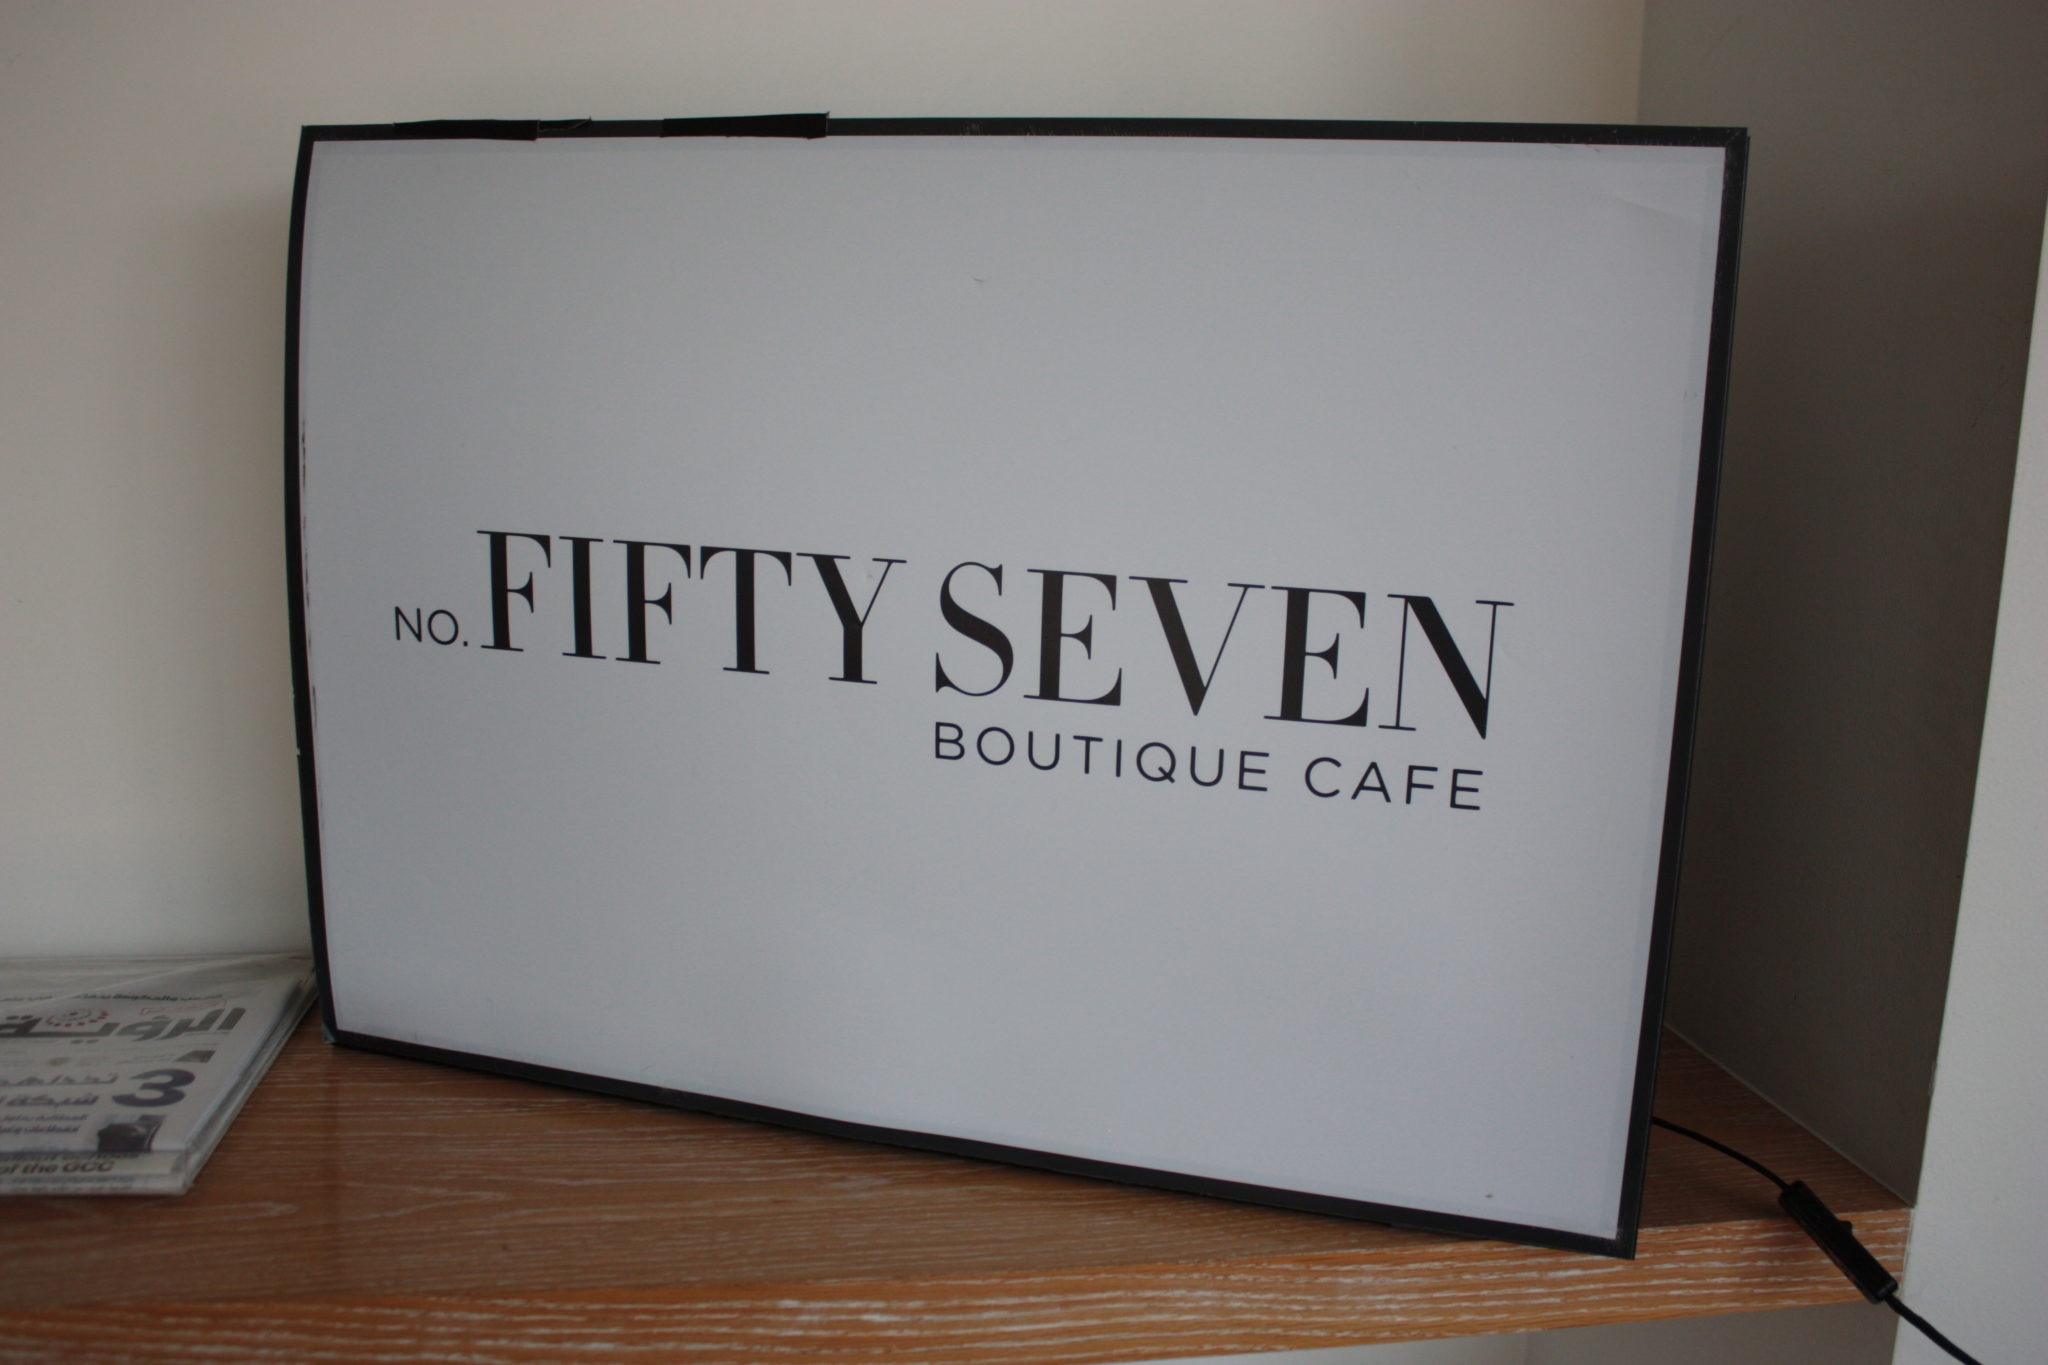 No. FiftySeven Boutique Café